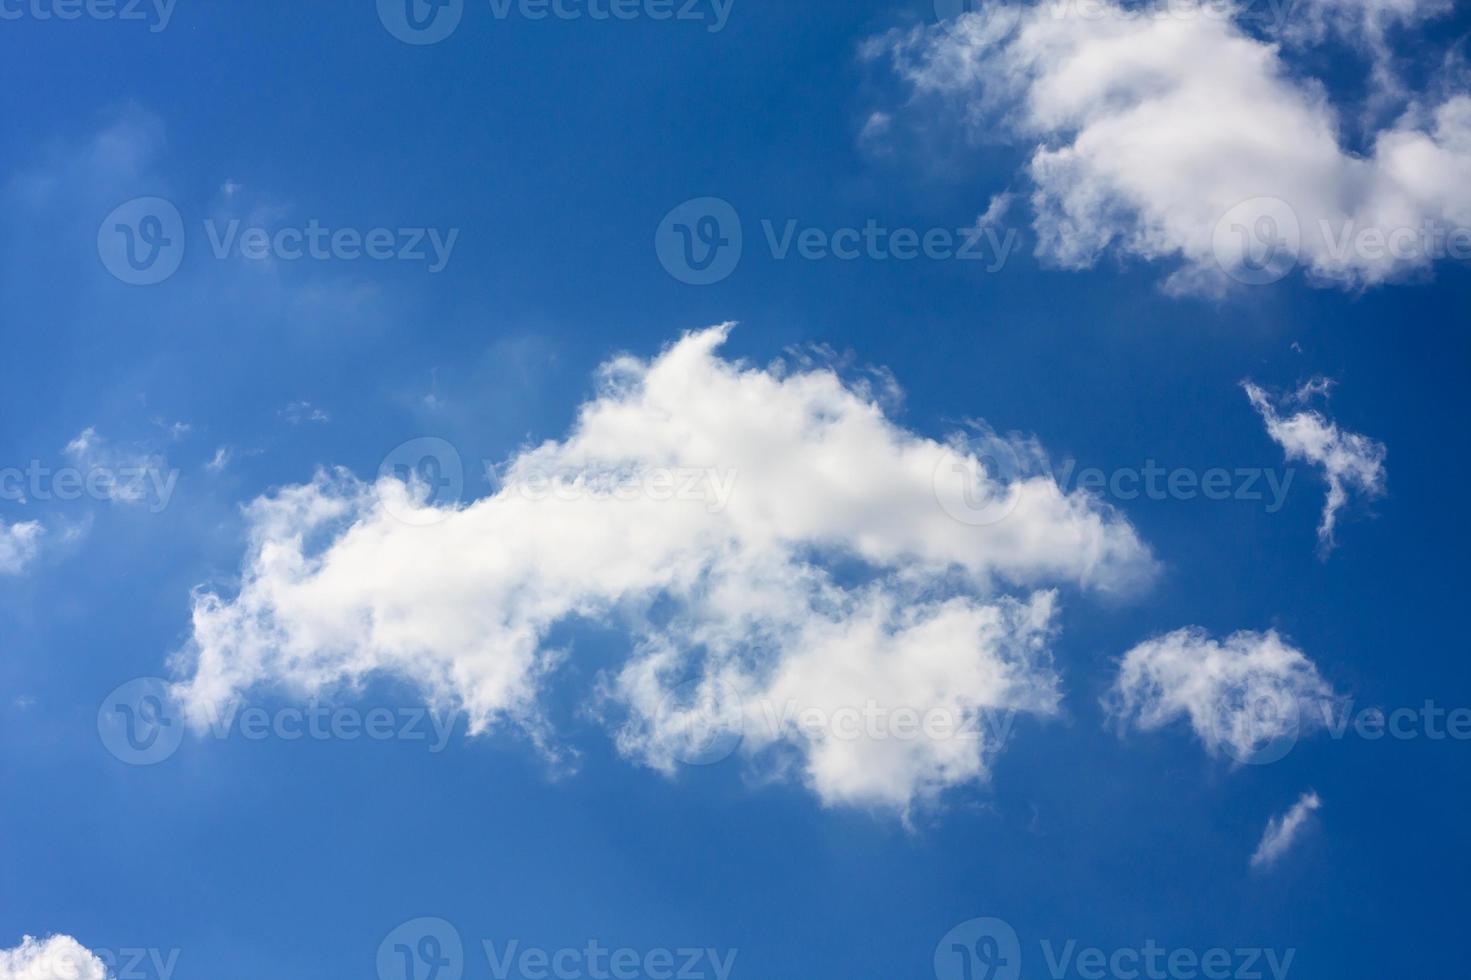 cielo blu con nuvole foto